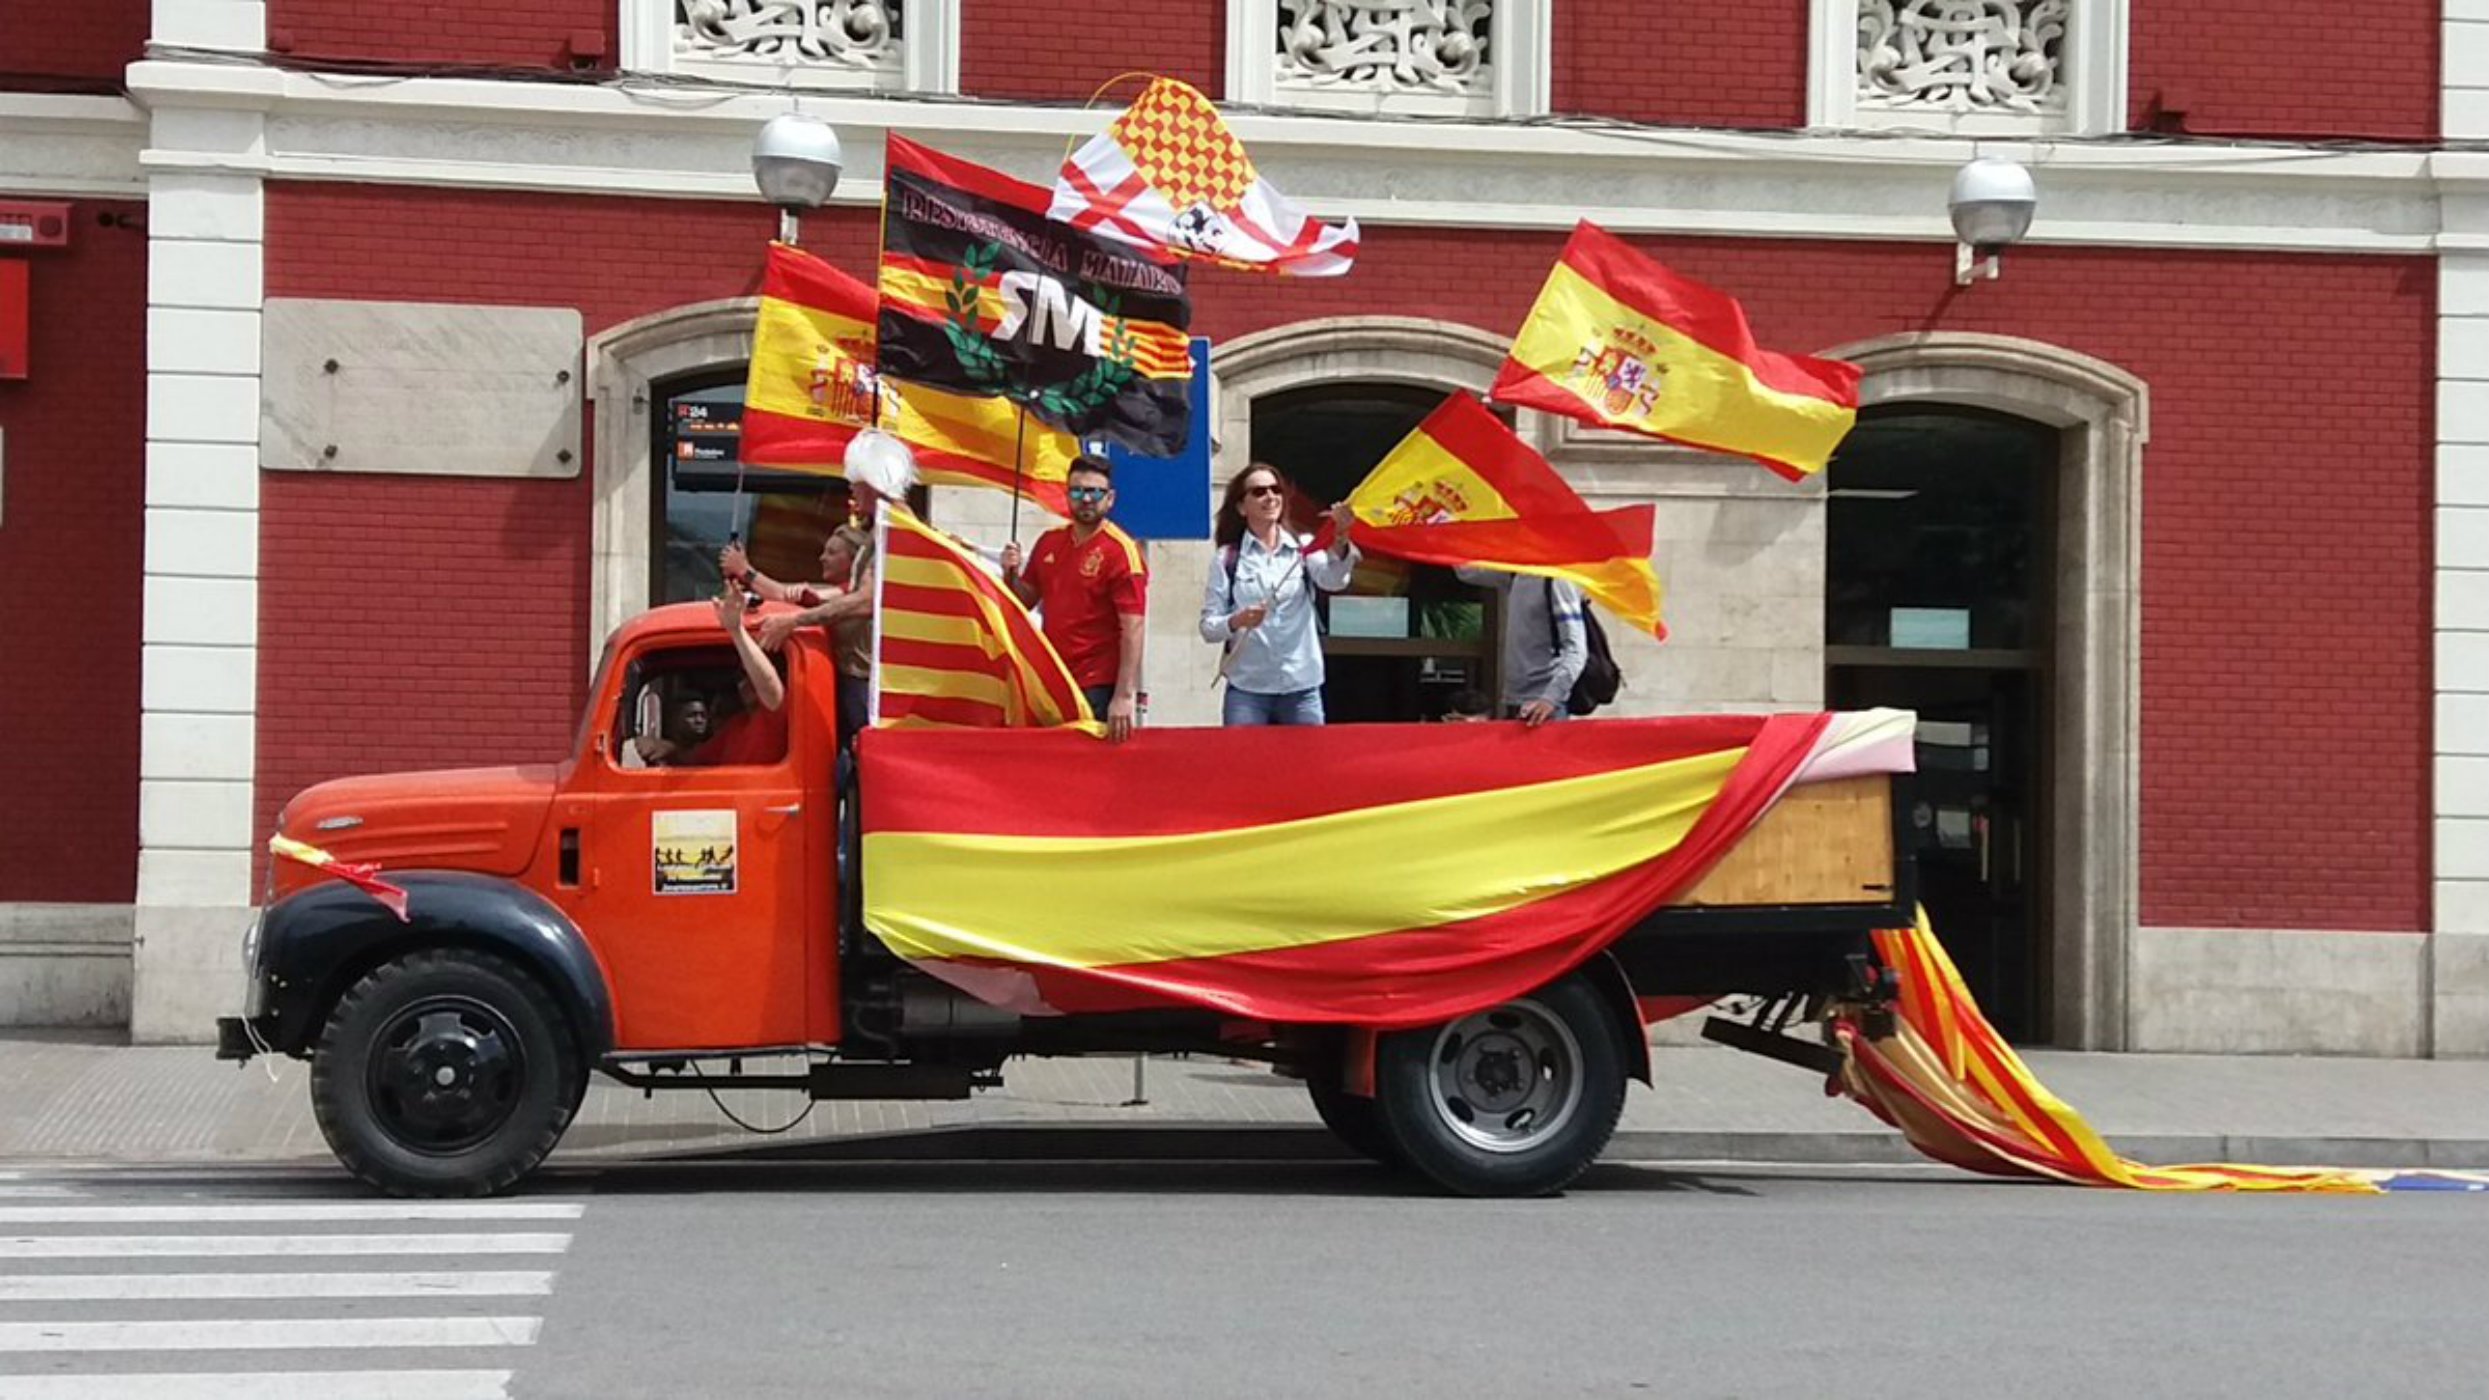 Punxa la mani unionista convocada per PP, Cs i PxC a Mataró